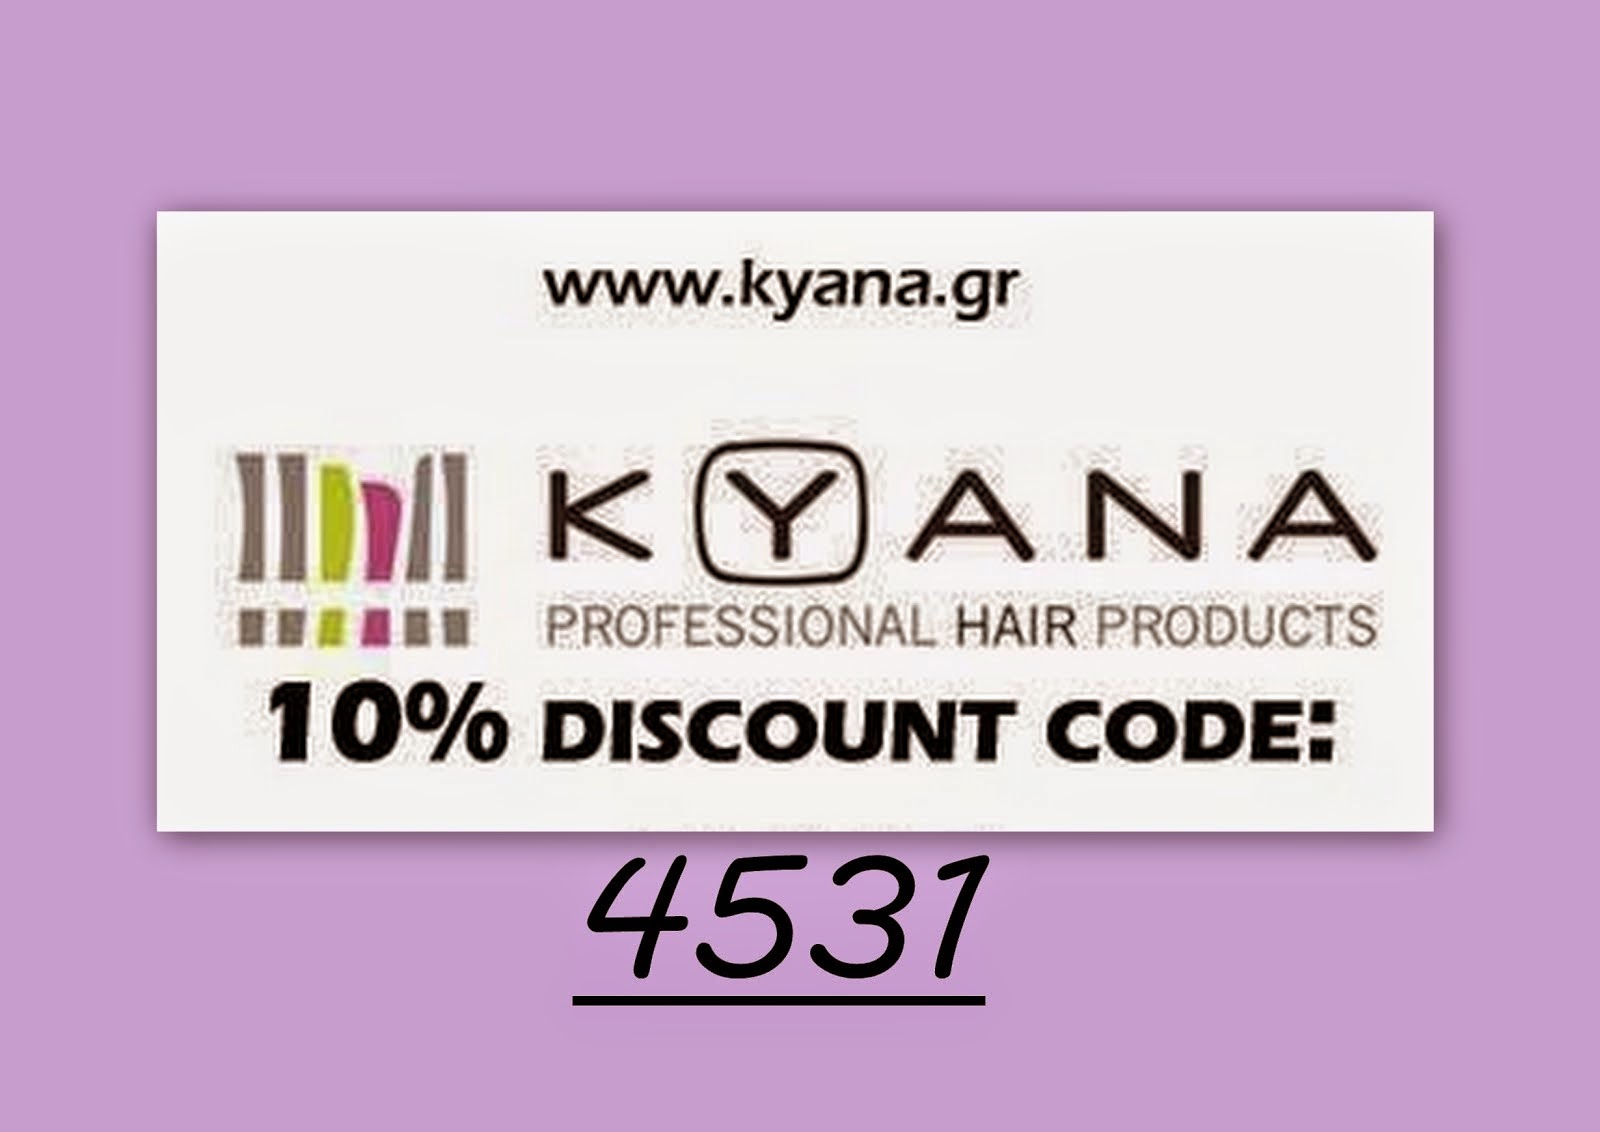 Κωδικός έκπτωσης για προϊόντα Kyana *μόνο για ΕΣΑΣ*